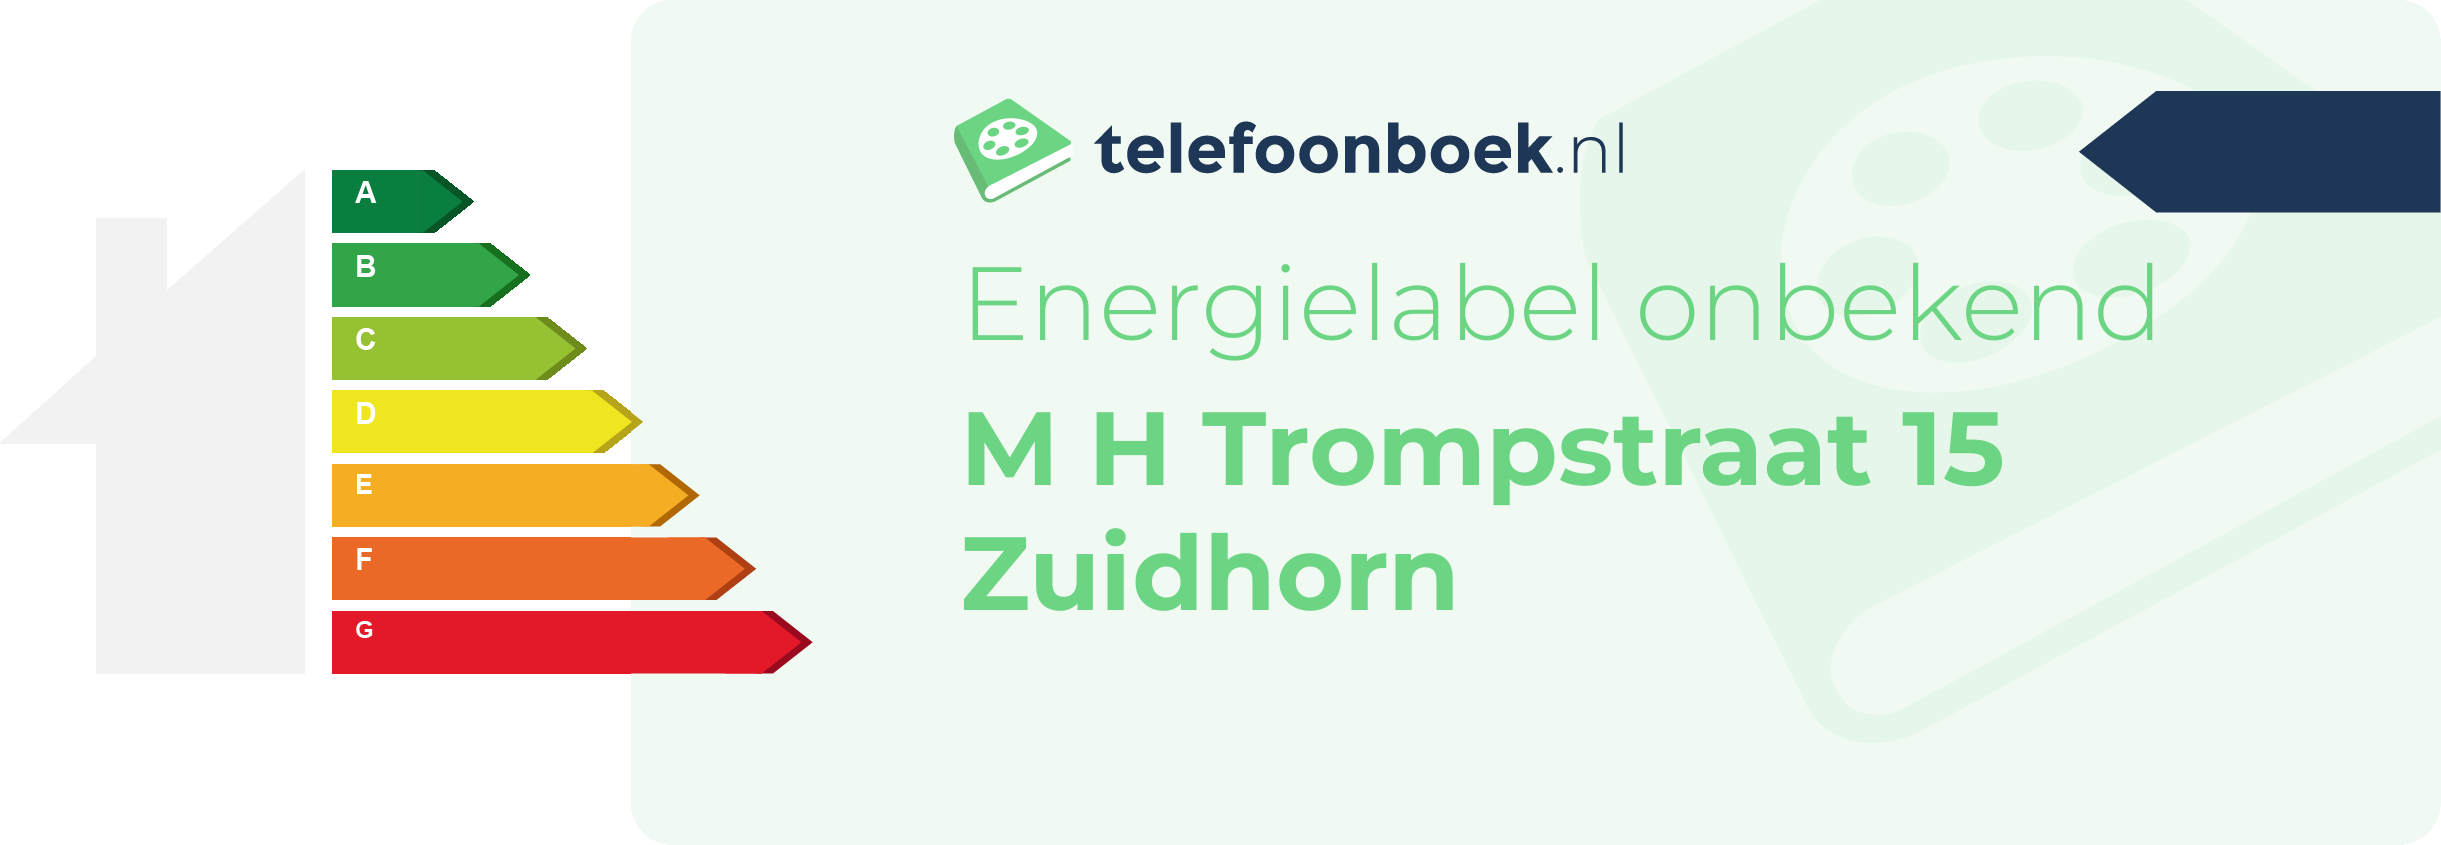 Energielabel M H Trompstraat 15 Zuidhorn